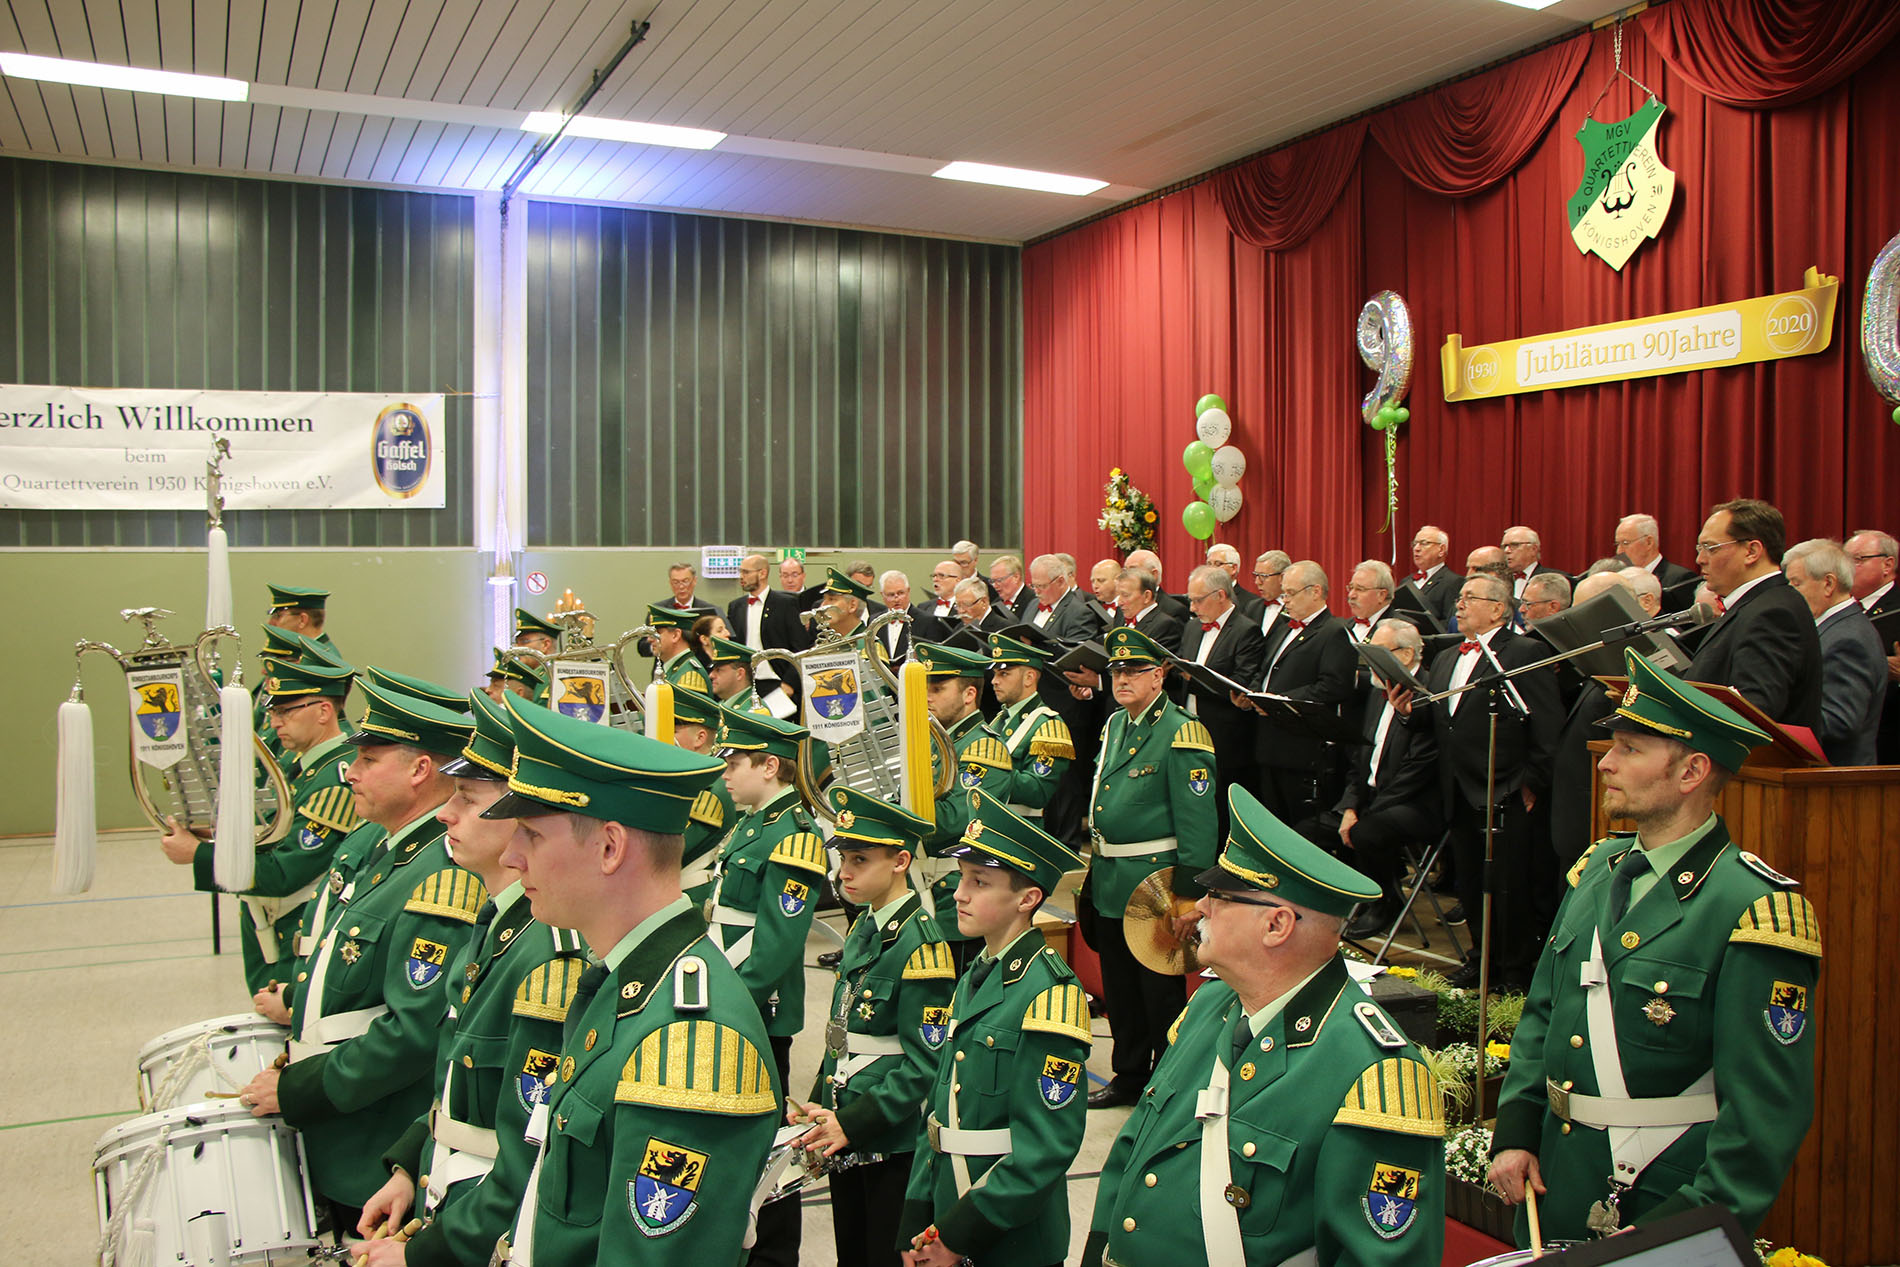 Zu den Marschklängen des befreundeten Bundestambourkorps 1911 Königshoven sang der Quartettverein den "Fliegermarsch".